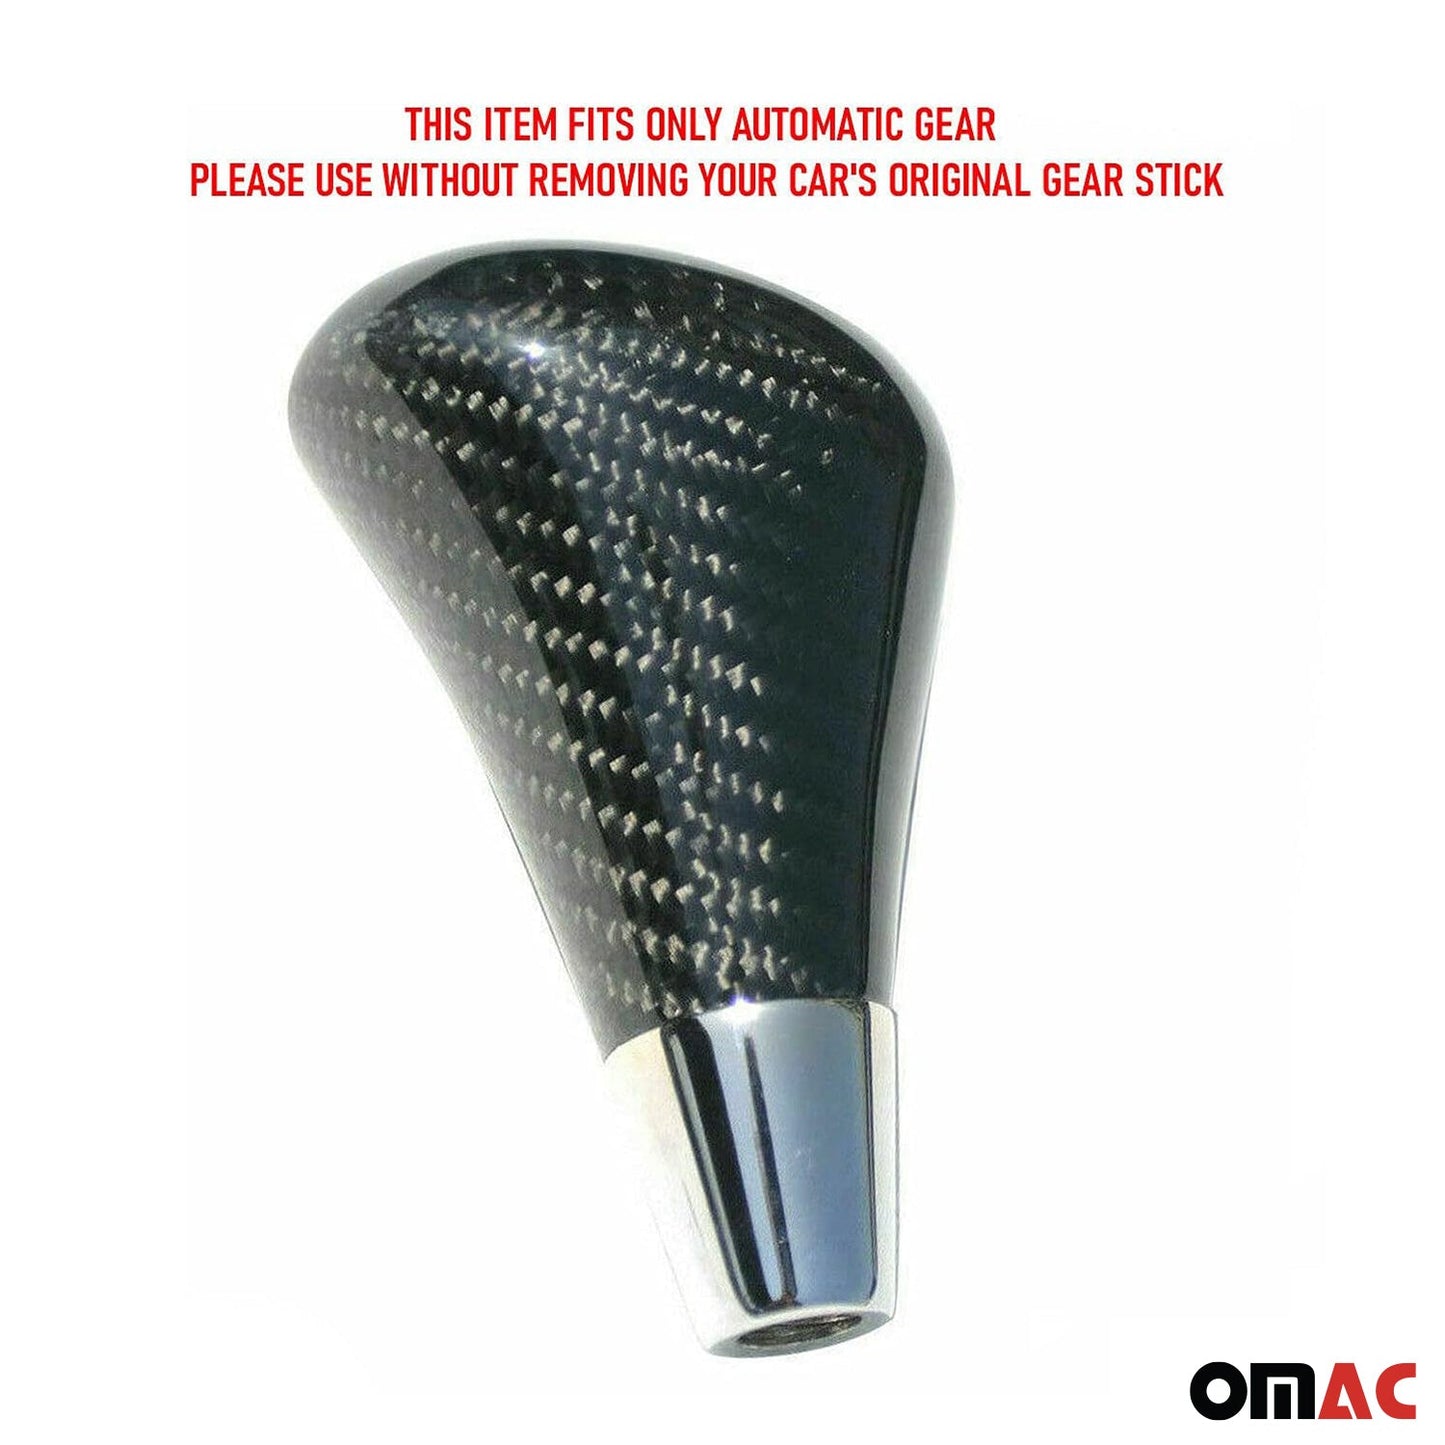 OMAC Automatic Gear Shift Handle Knob Fits Mercedes SLK-Class Carbon Fiber Black U003692